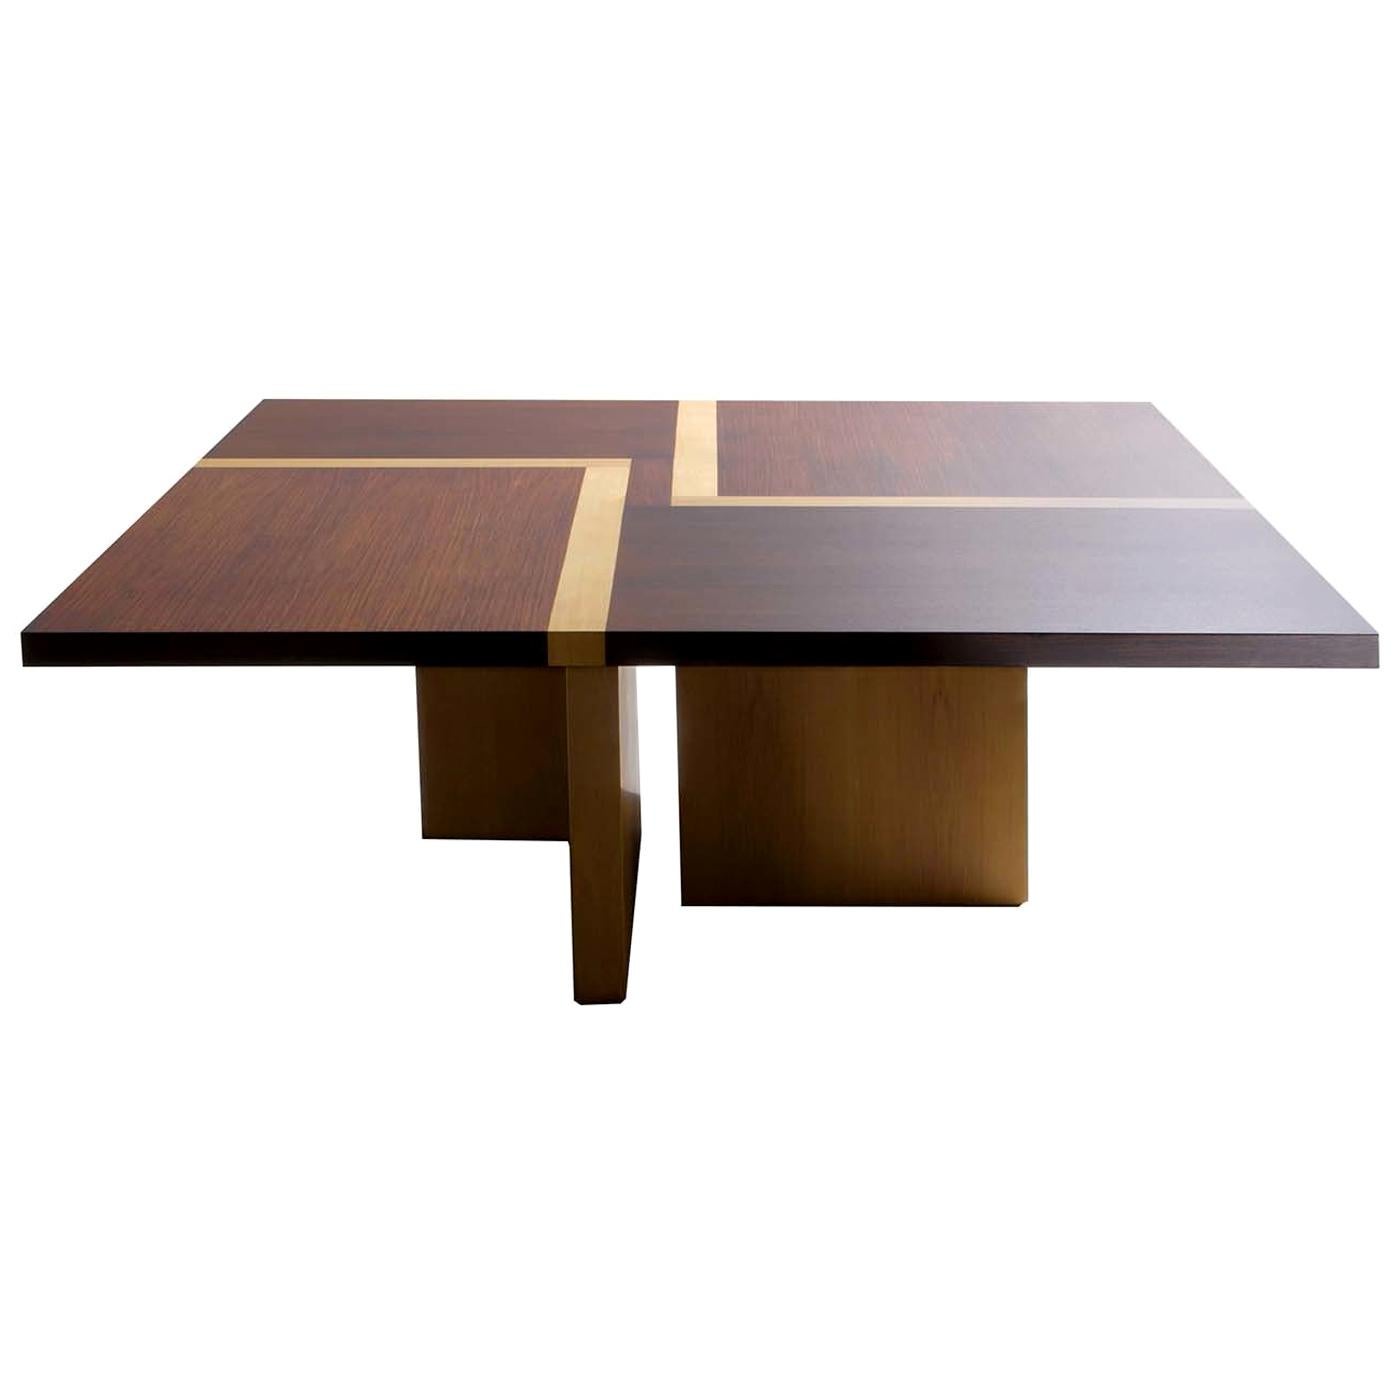 BD 07 Square Table by Bartoli Design